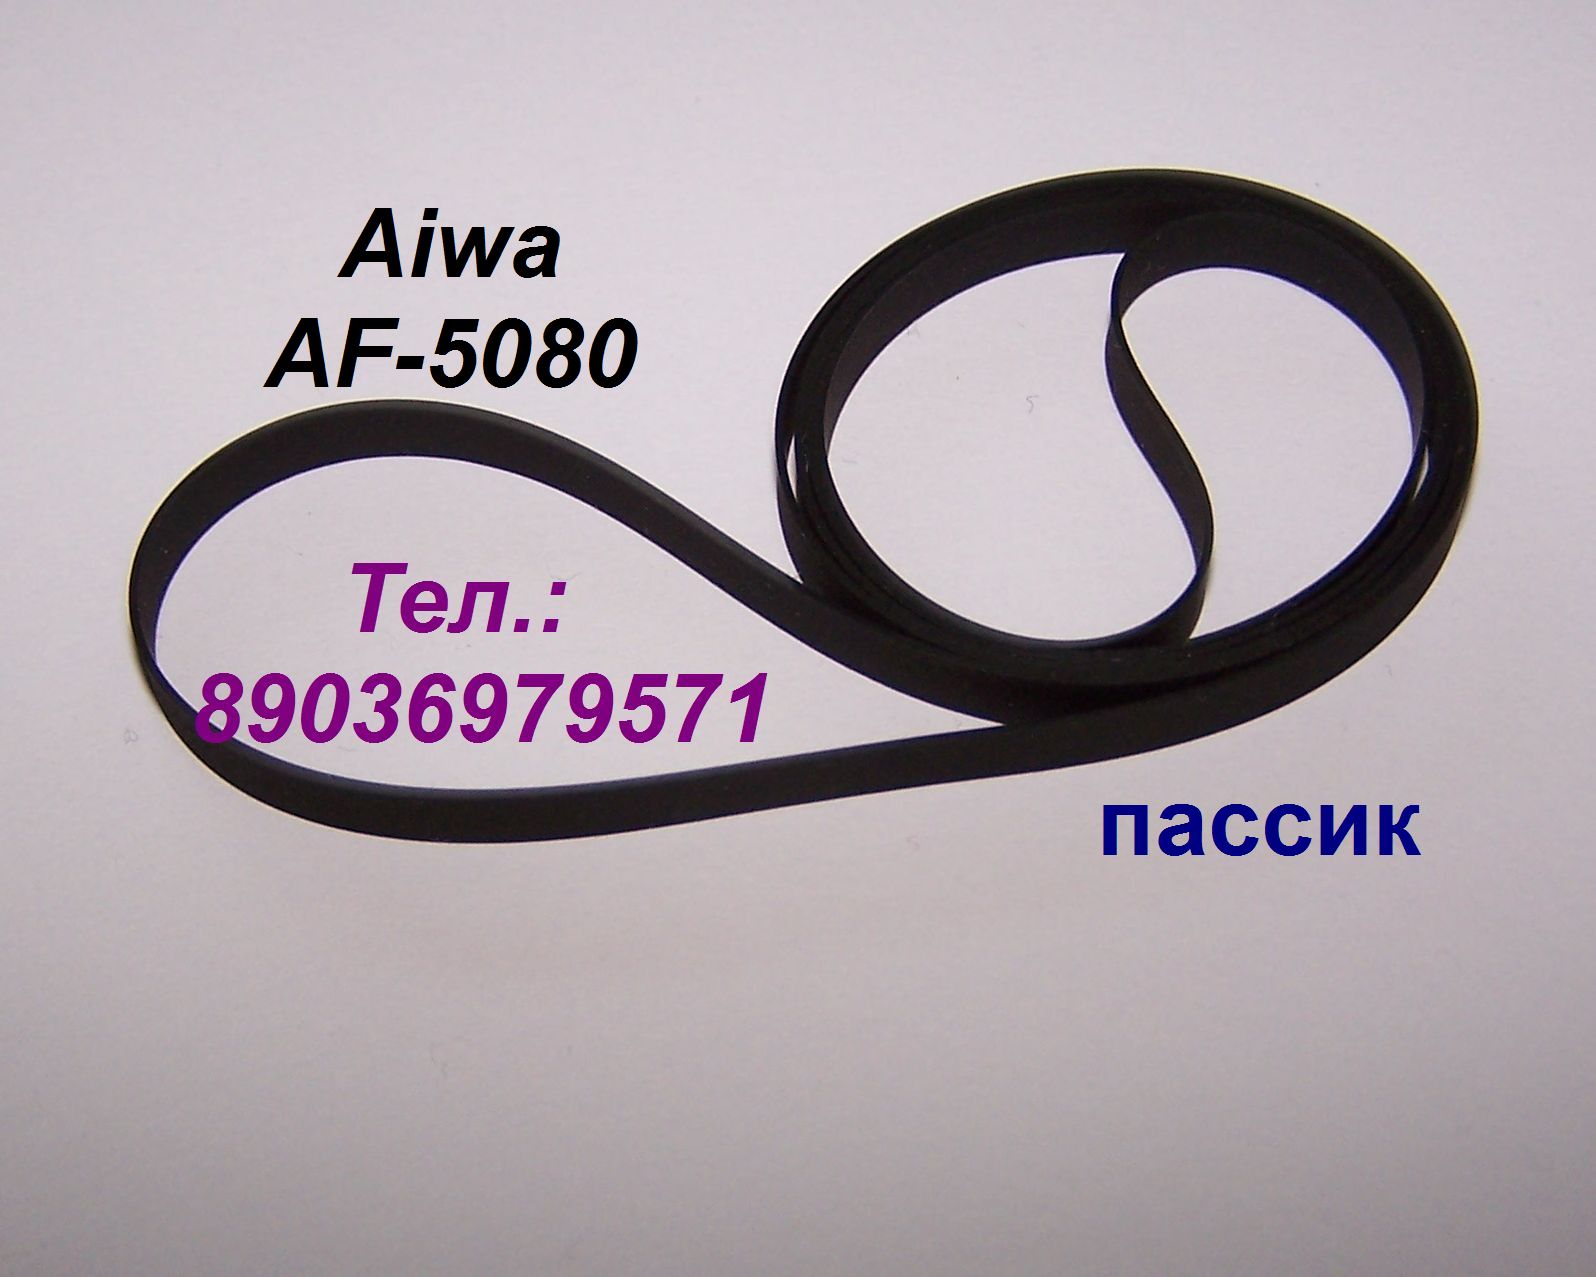 Фирменный японский пассик для Aiwa AF-5080 (пасик для Айвы 5080 Aiwa AF5080) в городе Москва, фото 1, телефон продавца: +7 (903) 697-95-71